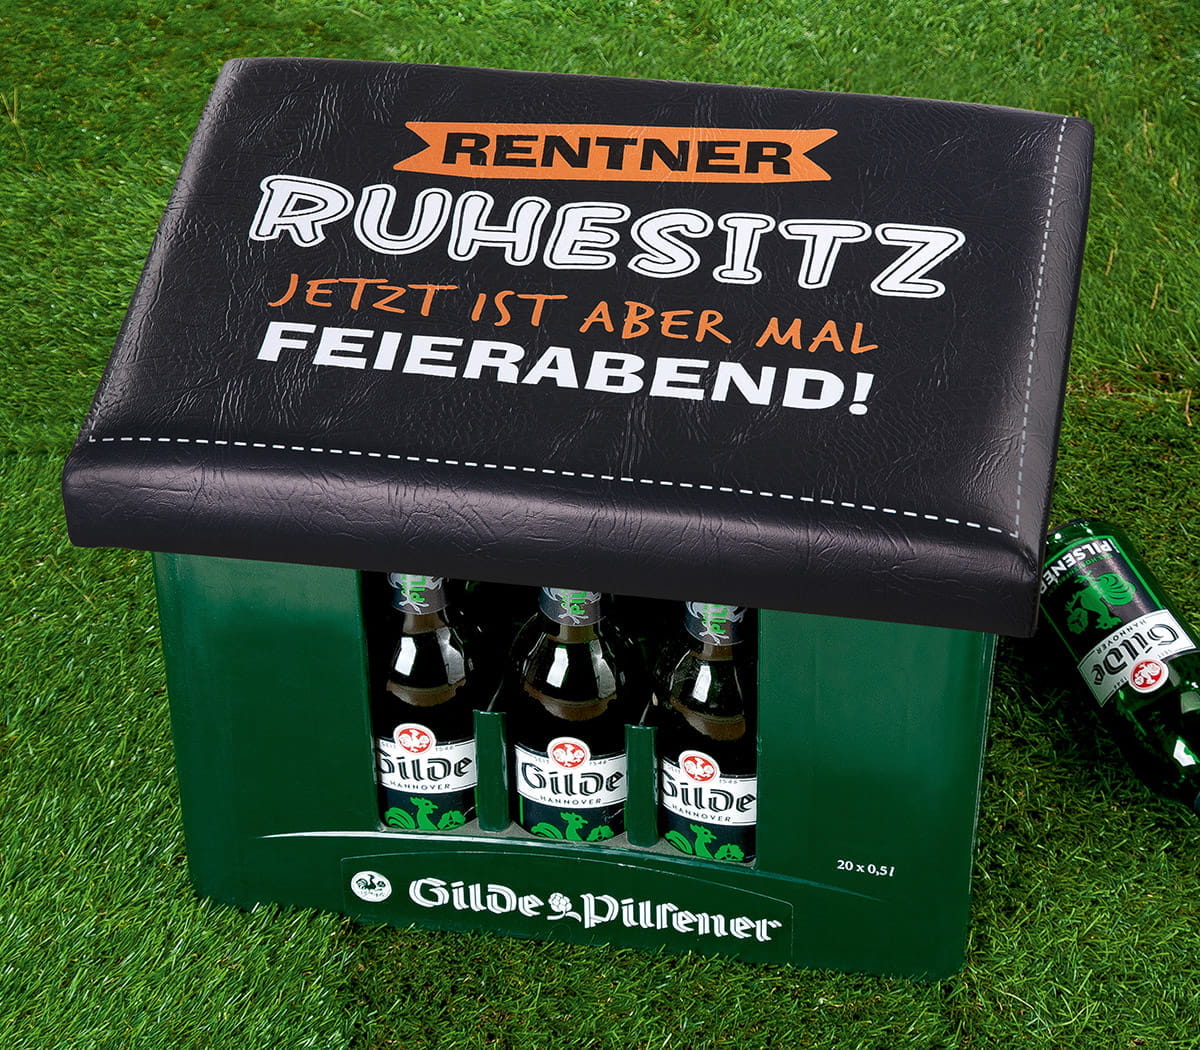 Gilde Sitzpolster für Getränke-/Bierkiste "Ruhesitz" 34 x 44 cm